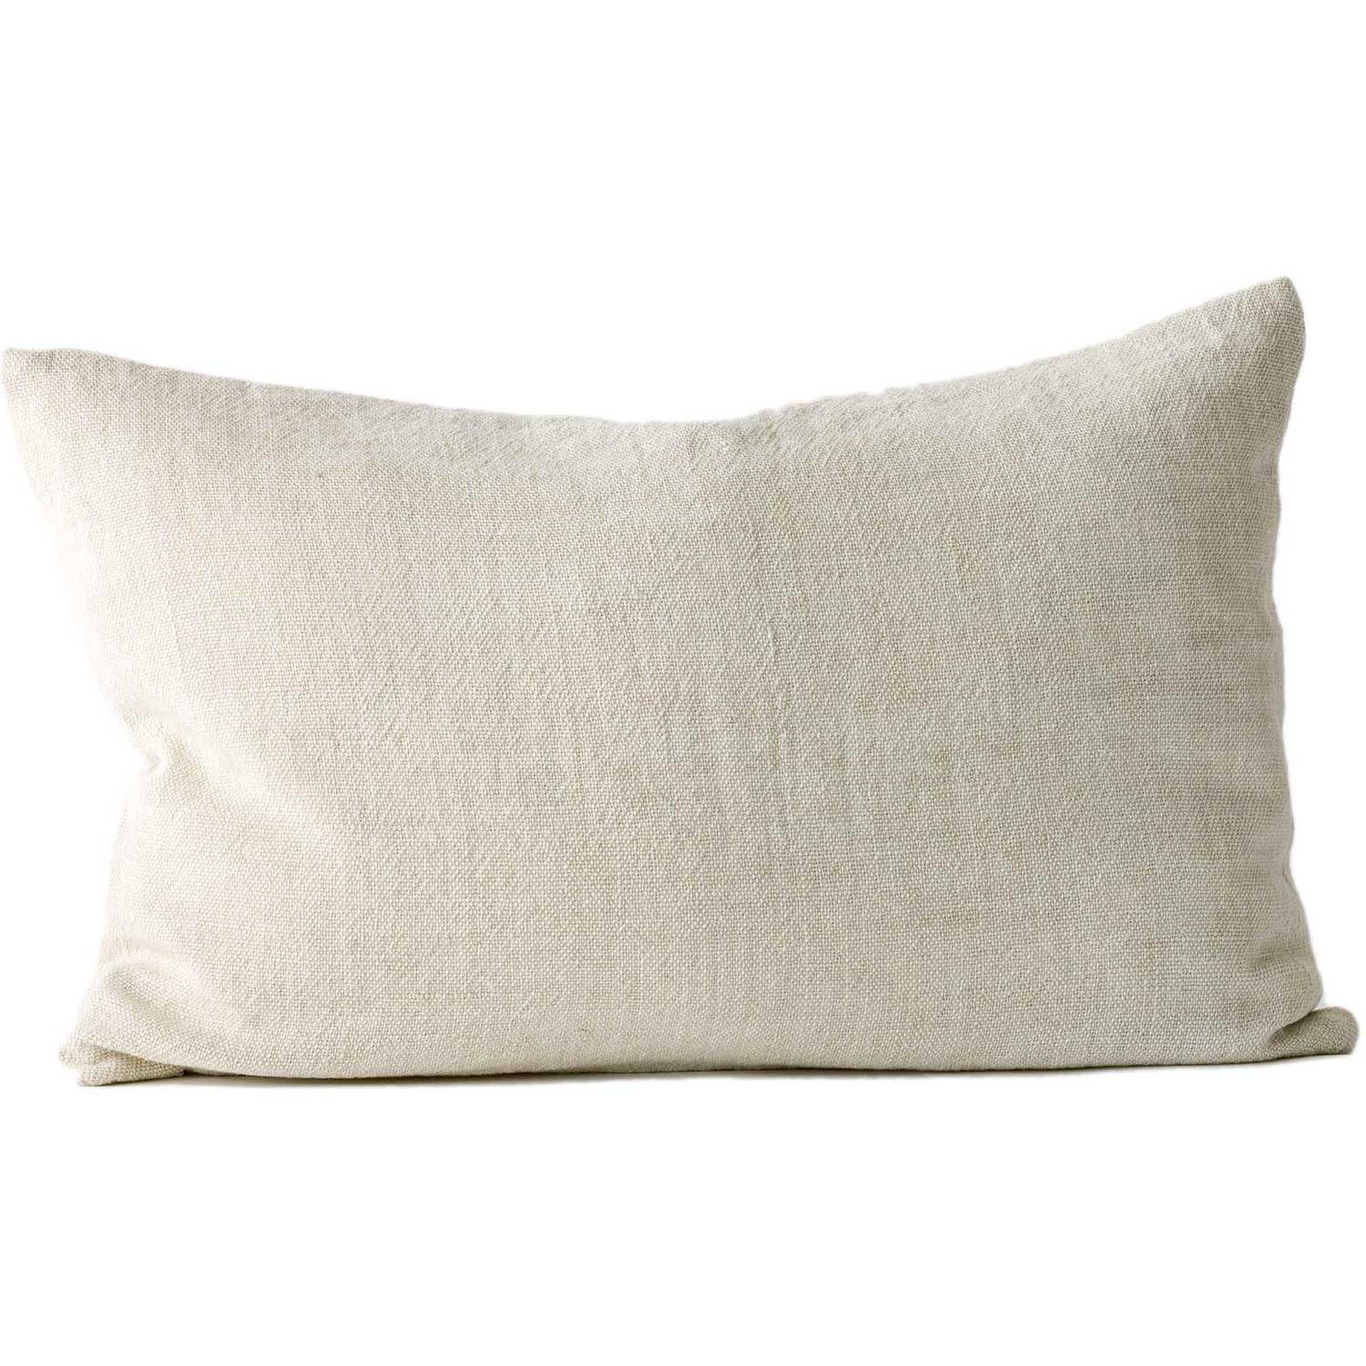 Margaux Cushion Cover 40x60 cm, Wheat